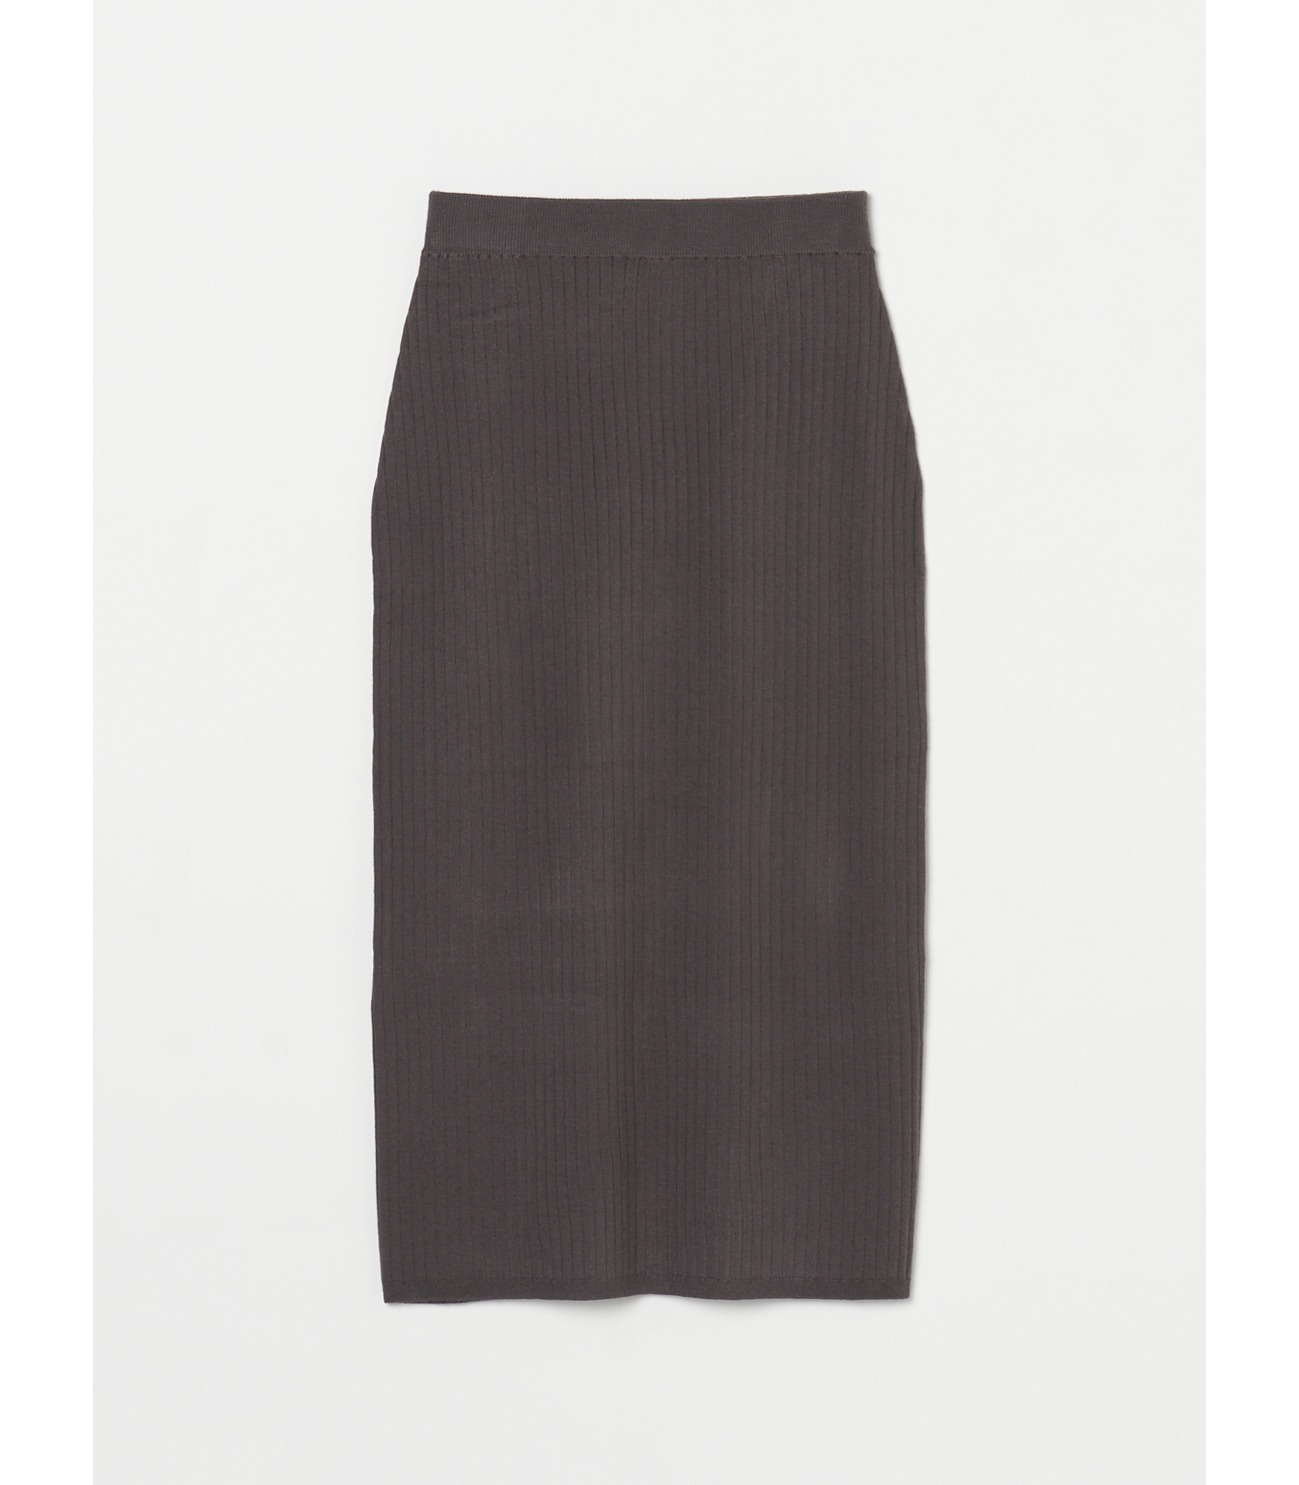 Moist pencil skirt 詳細画像 shark grey 2